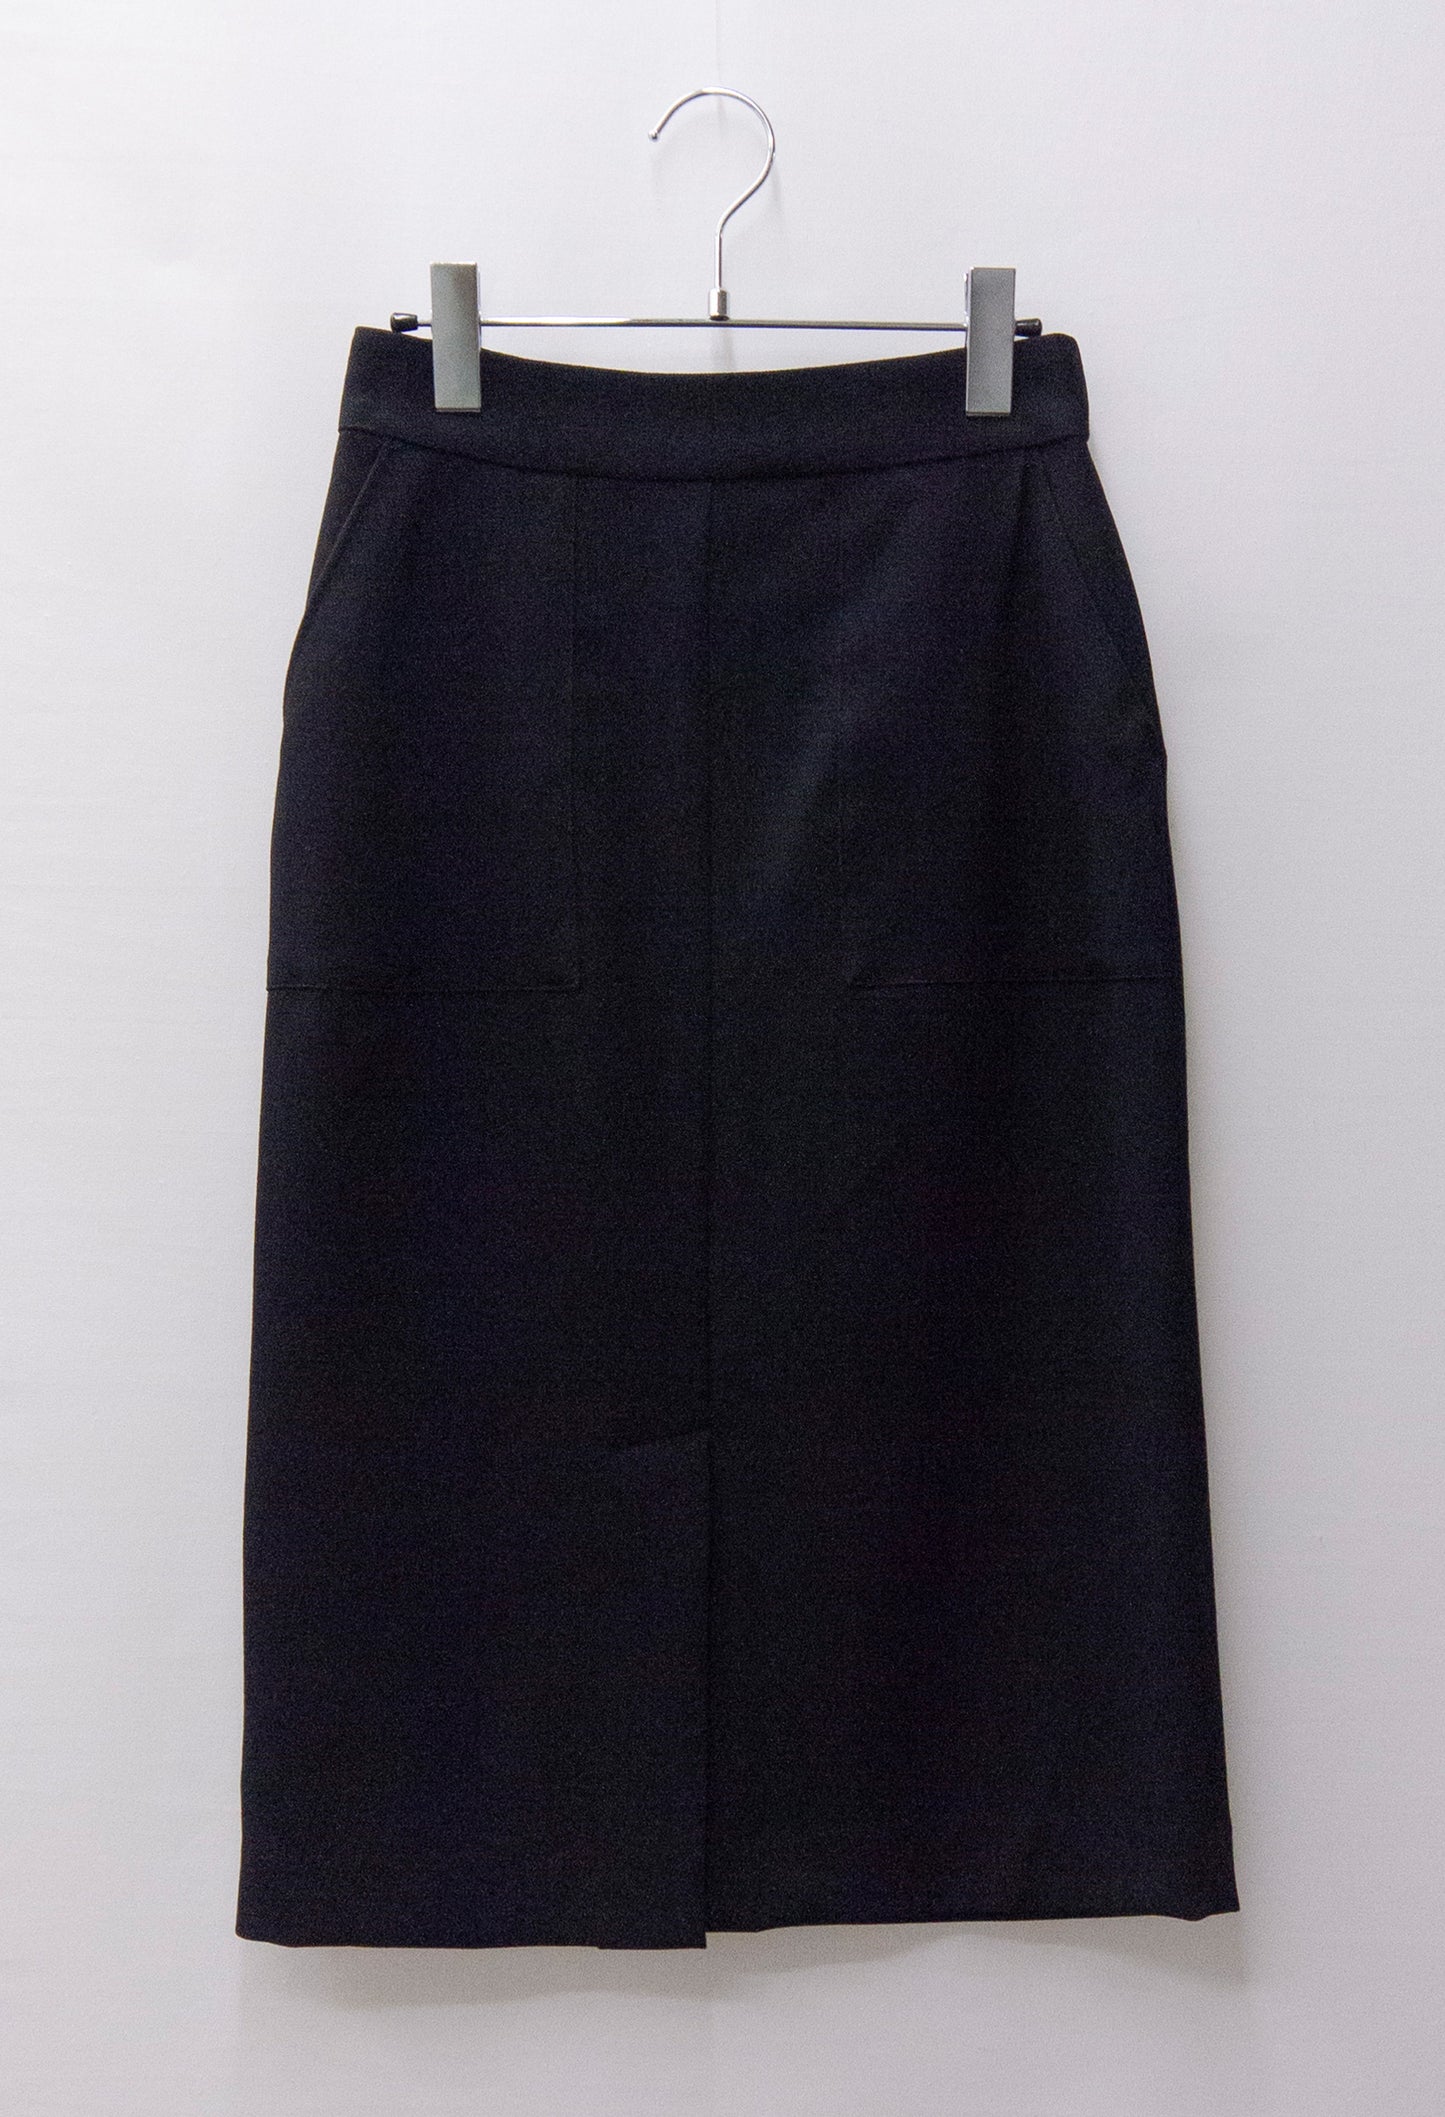 ウーステッドサージ両ポケット付きタイトスカート(681-1731)